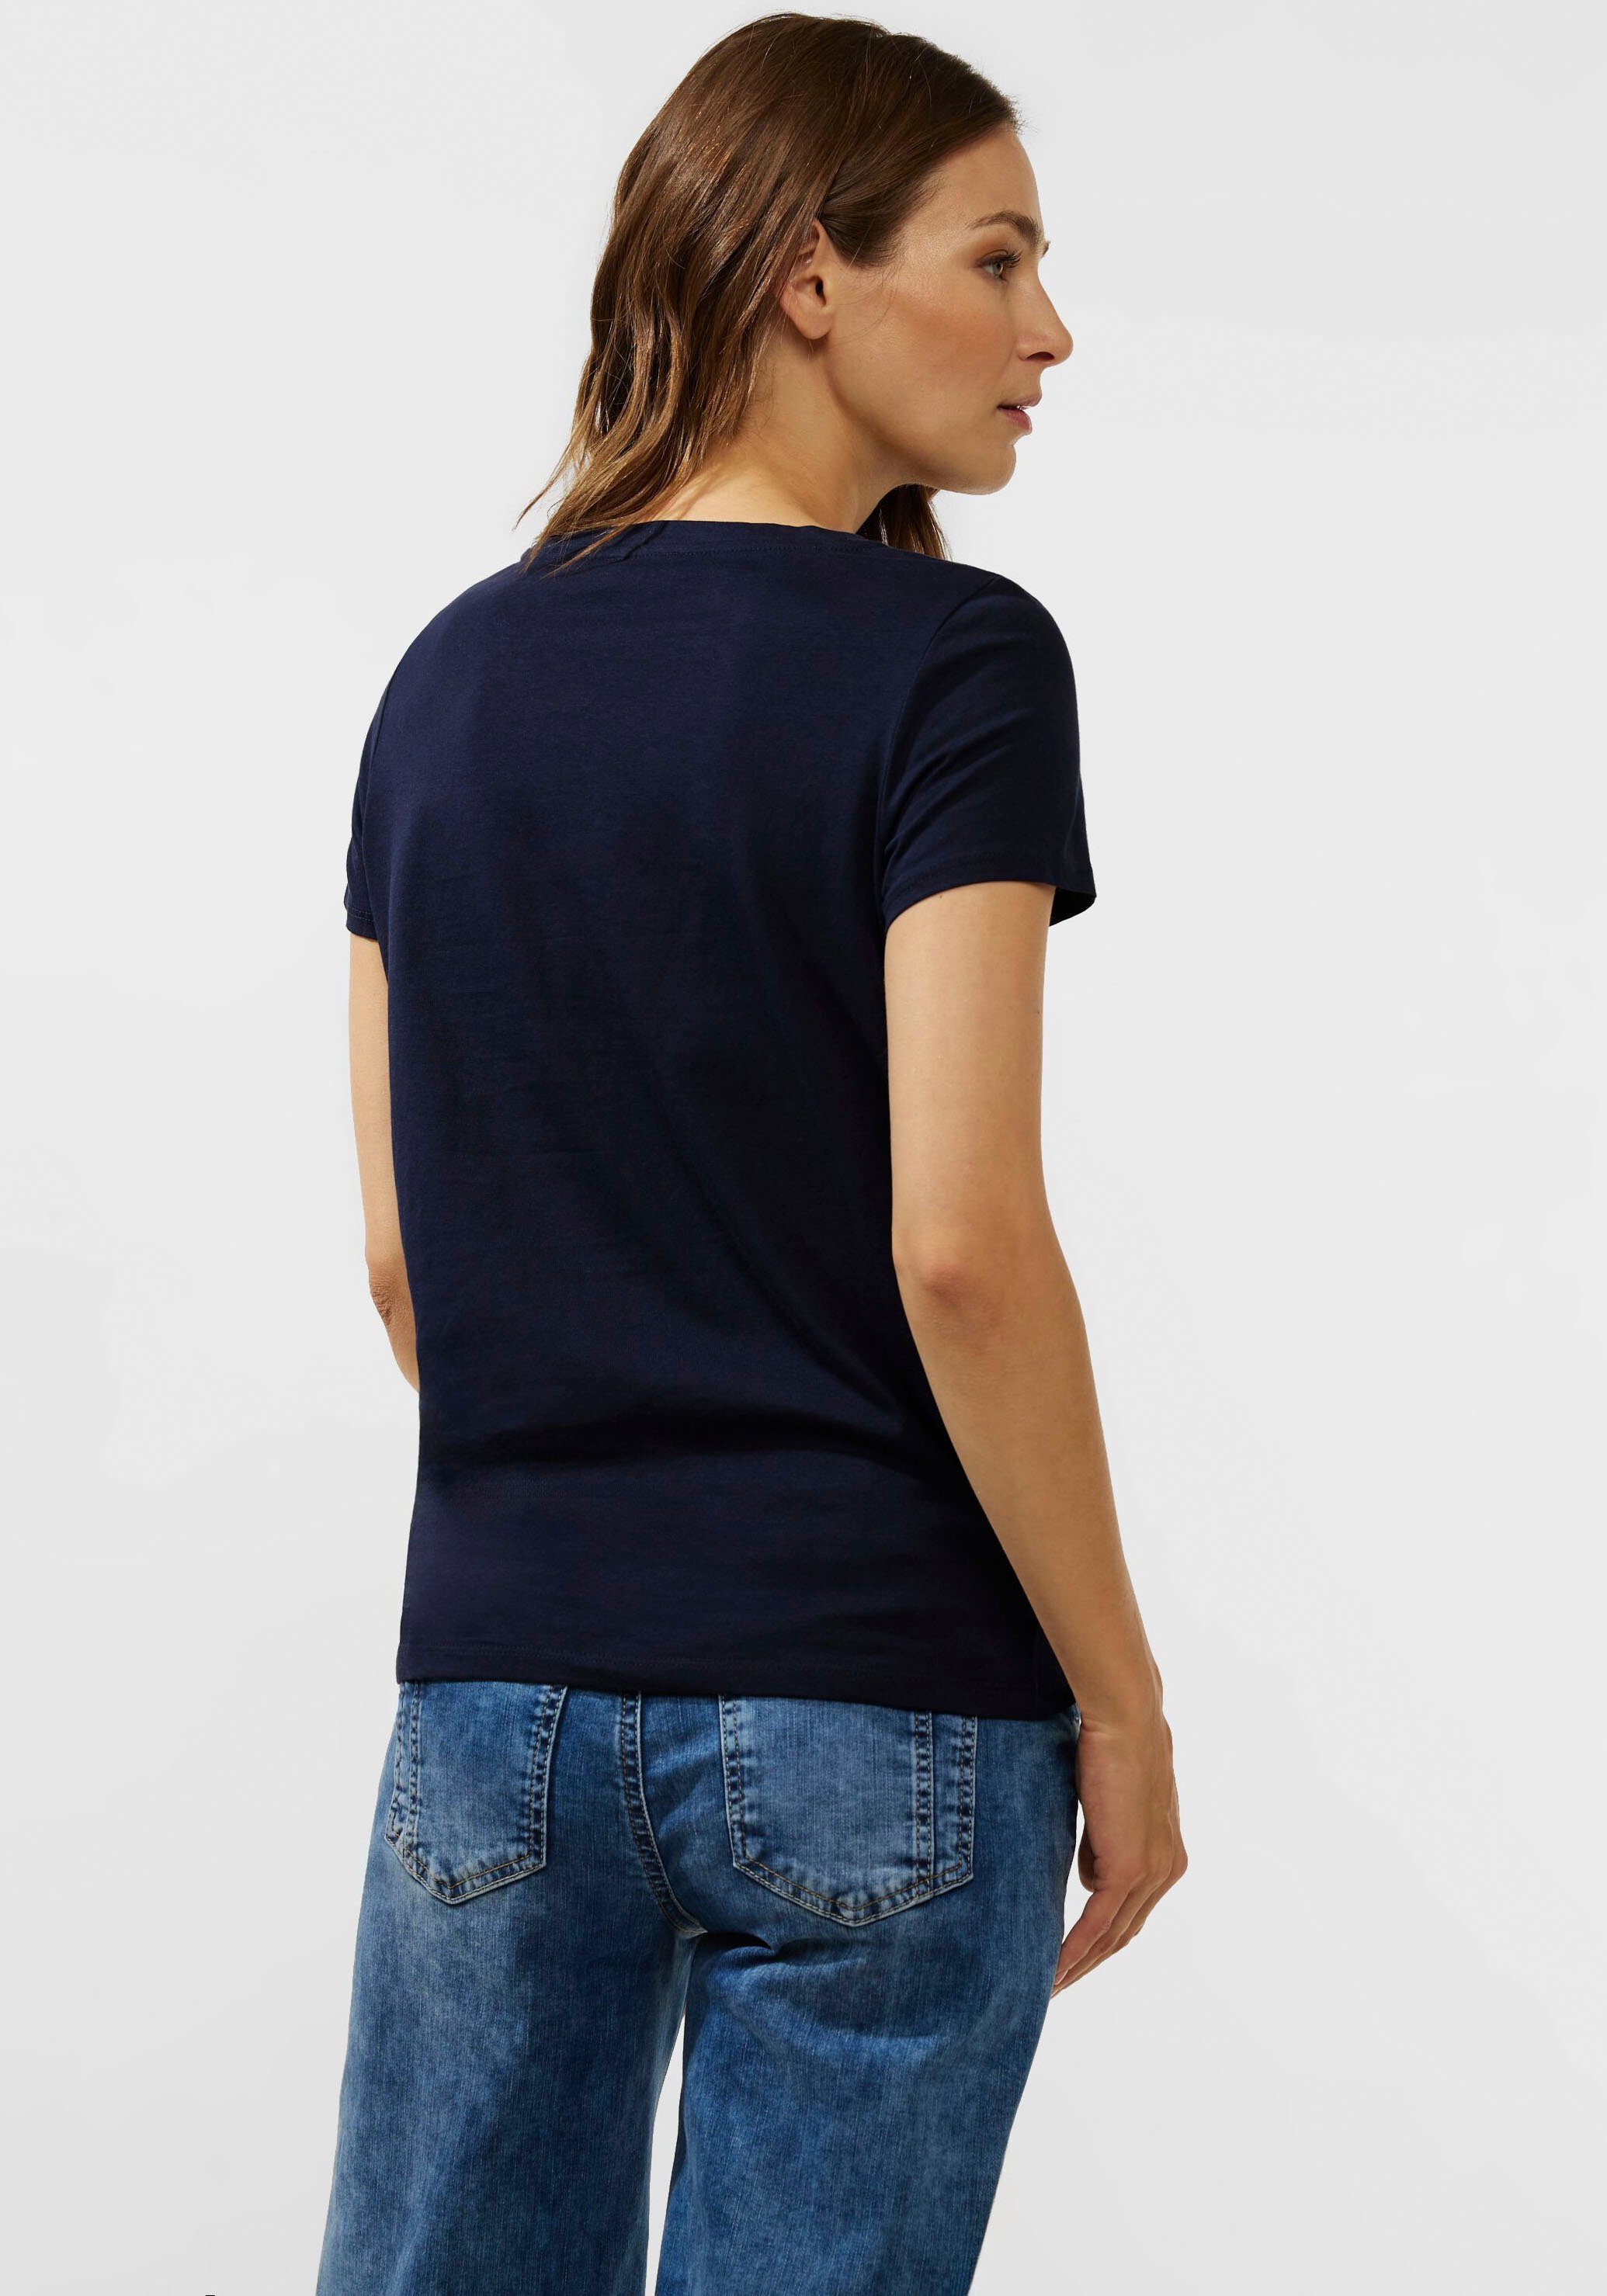 ONE blue verlängertem deep STREET mit T-Shirt Rückenteil